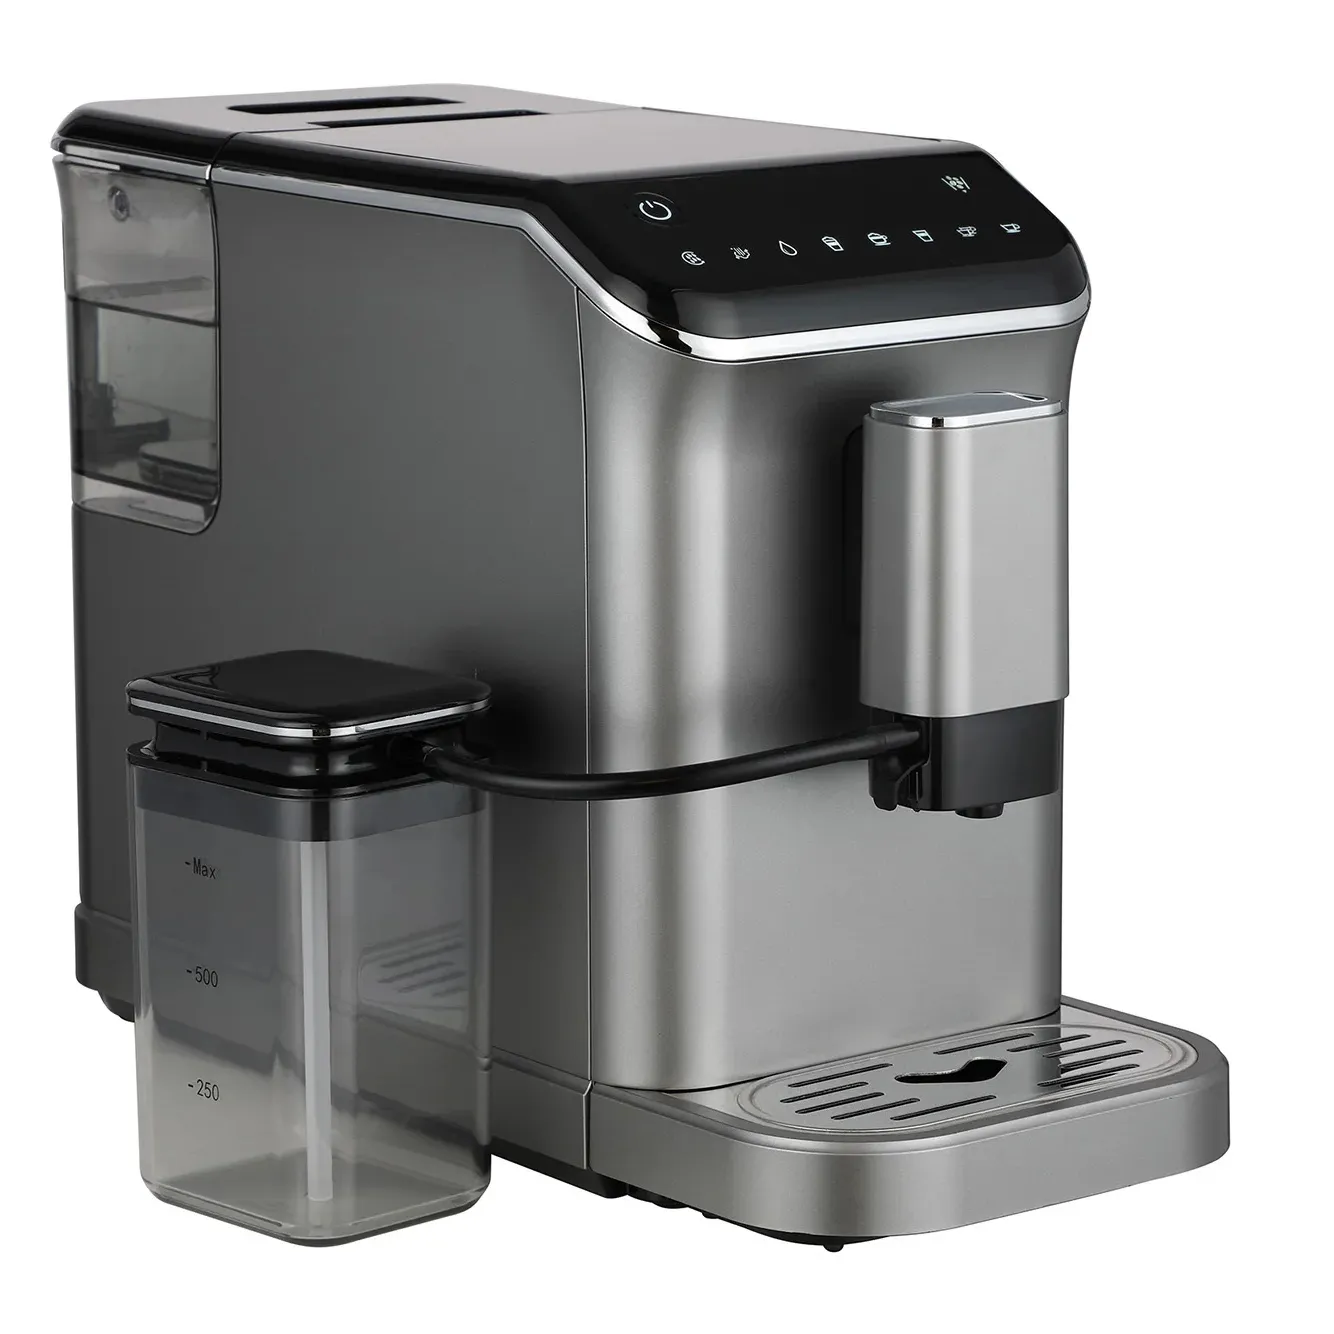 عرض ساخن علي ماكينة صنع قهوة اسبريسو الايطالية للاستخدام المنزلي ماكينة اسبريسو مع مطحنة كهربائية ستانلس ستيل بلاستيك غلاف سعة 1.5 لتر